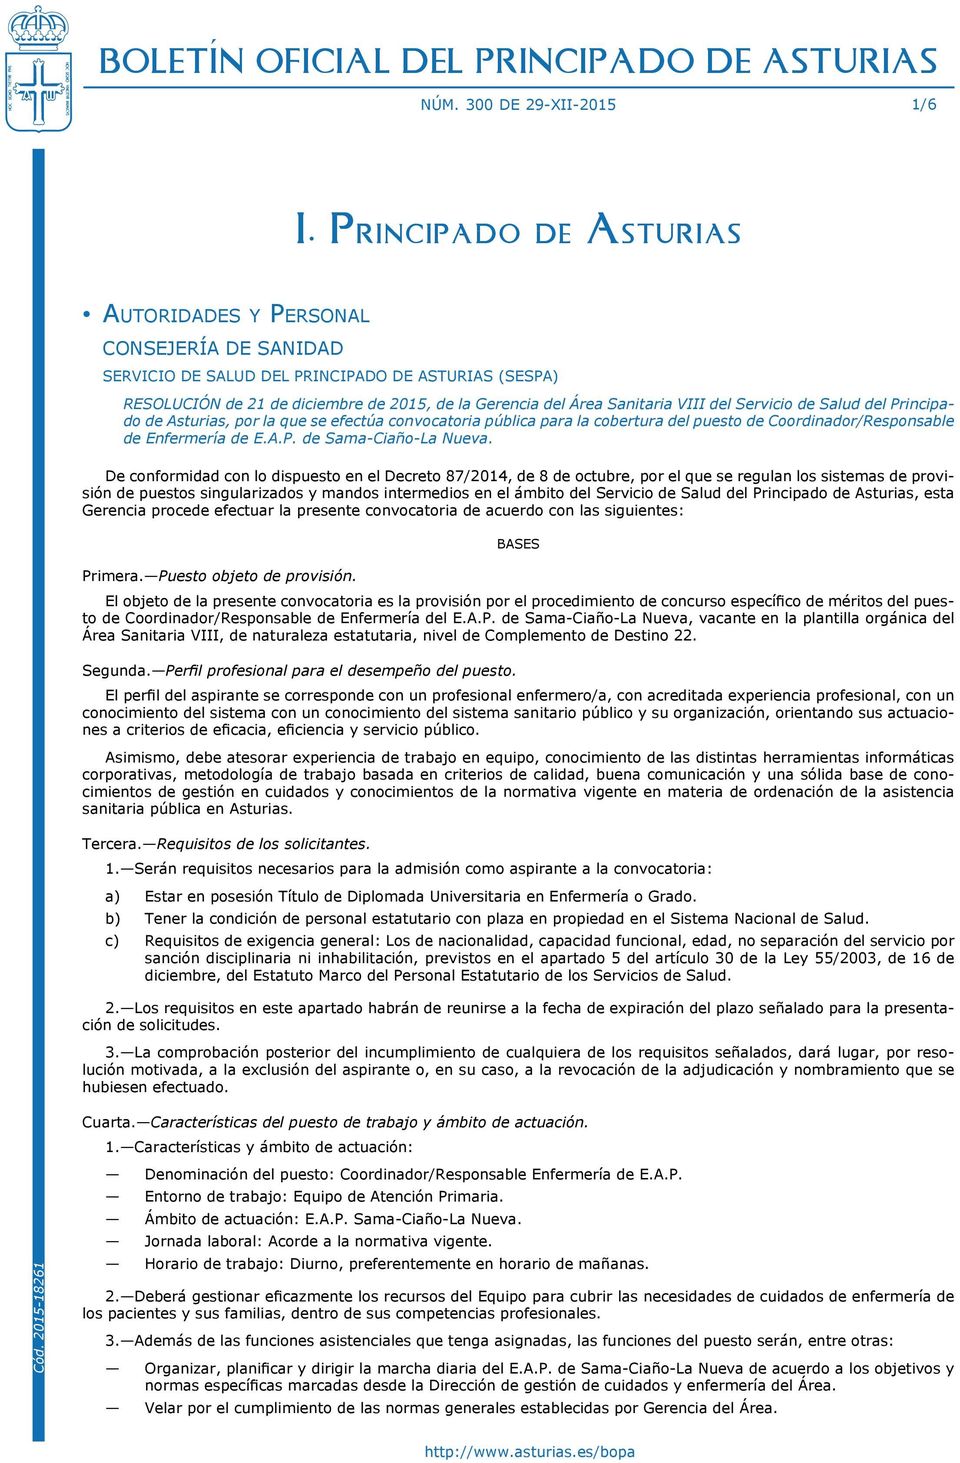 Sanitaria VIII del Servicio de Salud del Principado de Asturias, por la que se efectúa convocatoria pública para la cobertura del puesto de Coordinador/Responsable de Enfermería de E.A.P. de Sama-Ciaño-La Nueva.